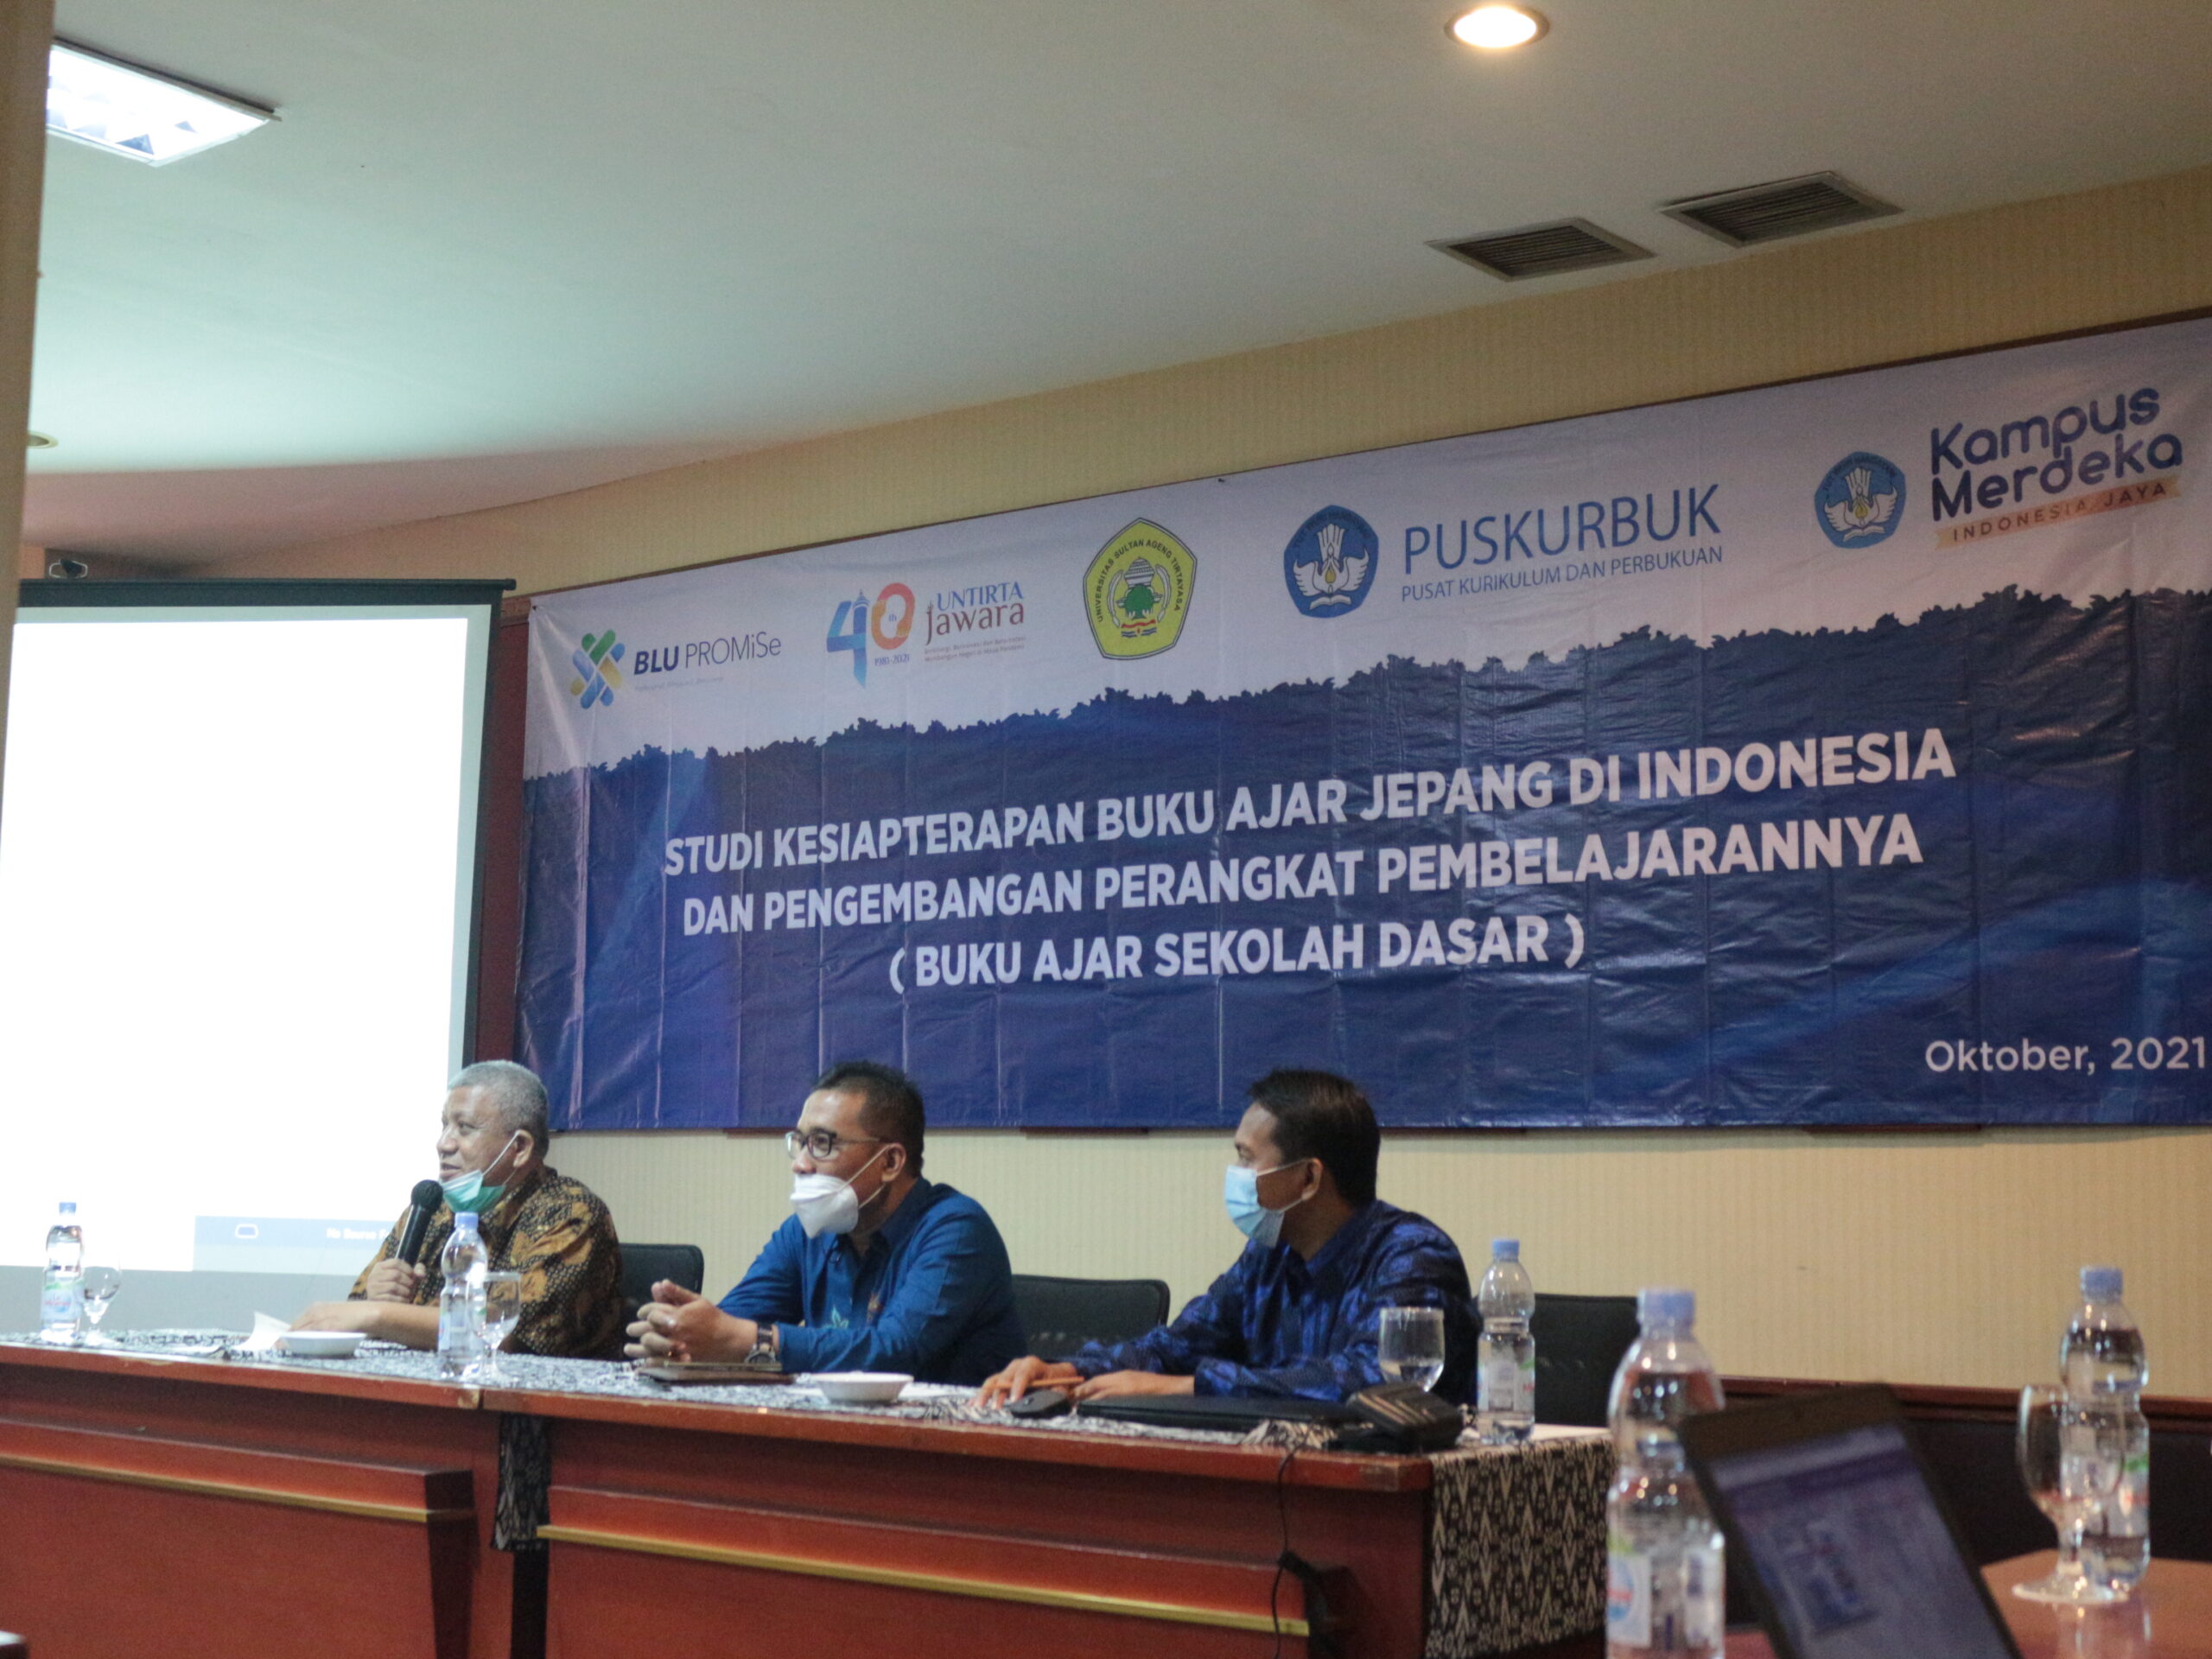 Workshop Analisis dan Revisi Produk Pembelajaran  Studi Kesiapanterapan Buku Ajar Jepang di Indonesia dan Pengembangan Perangkat Pengajarannya